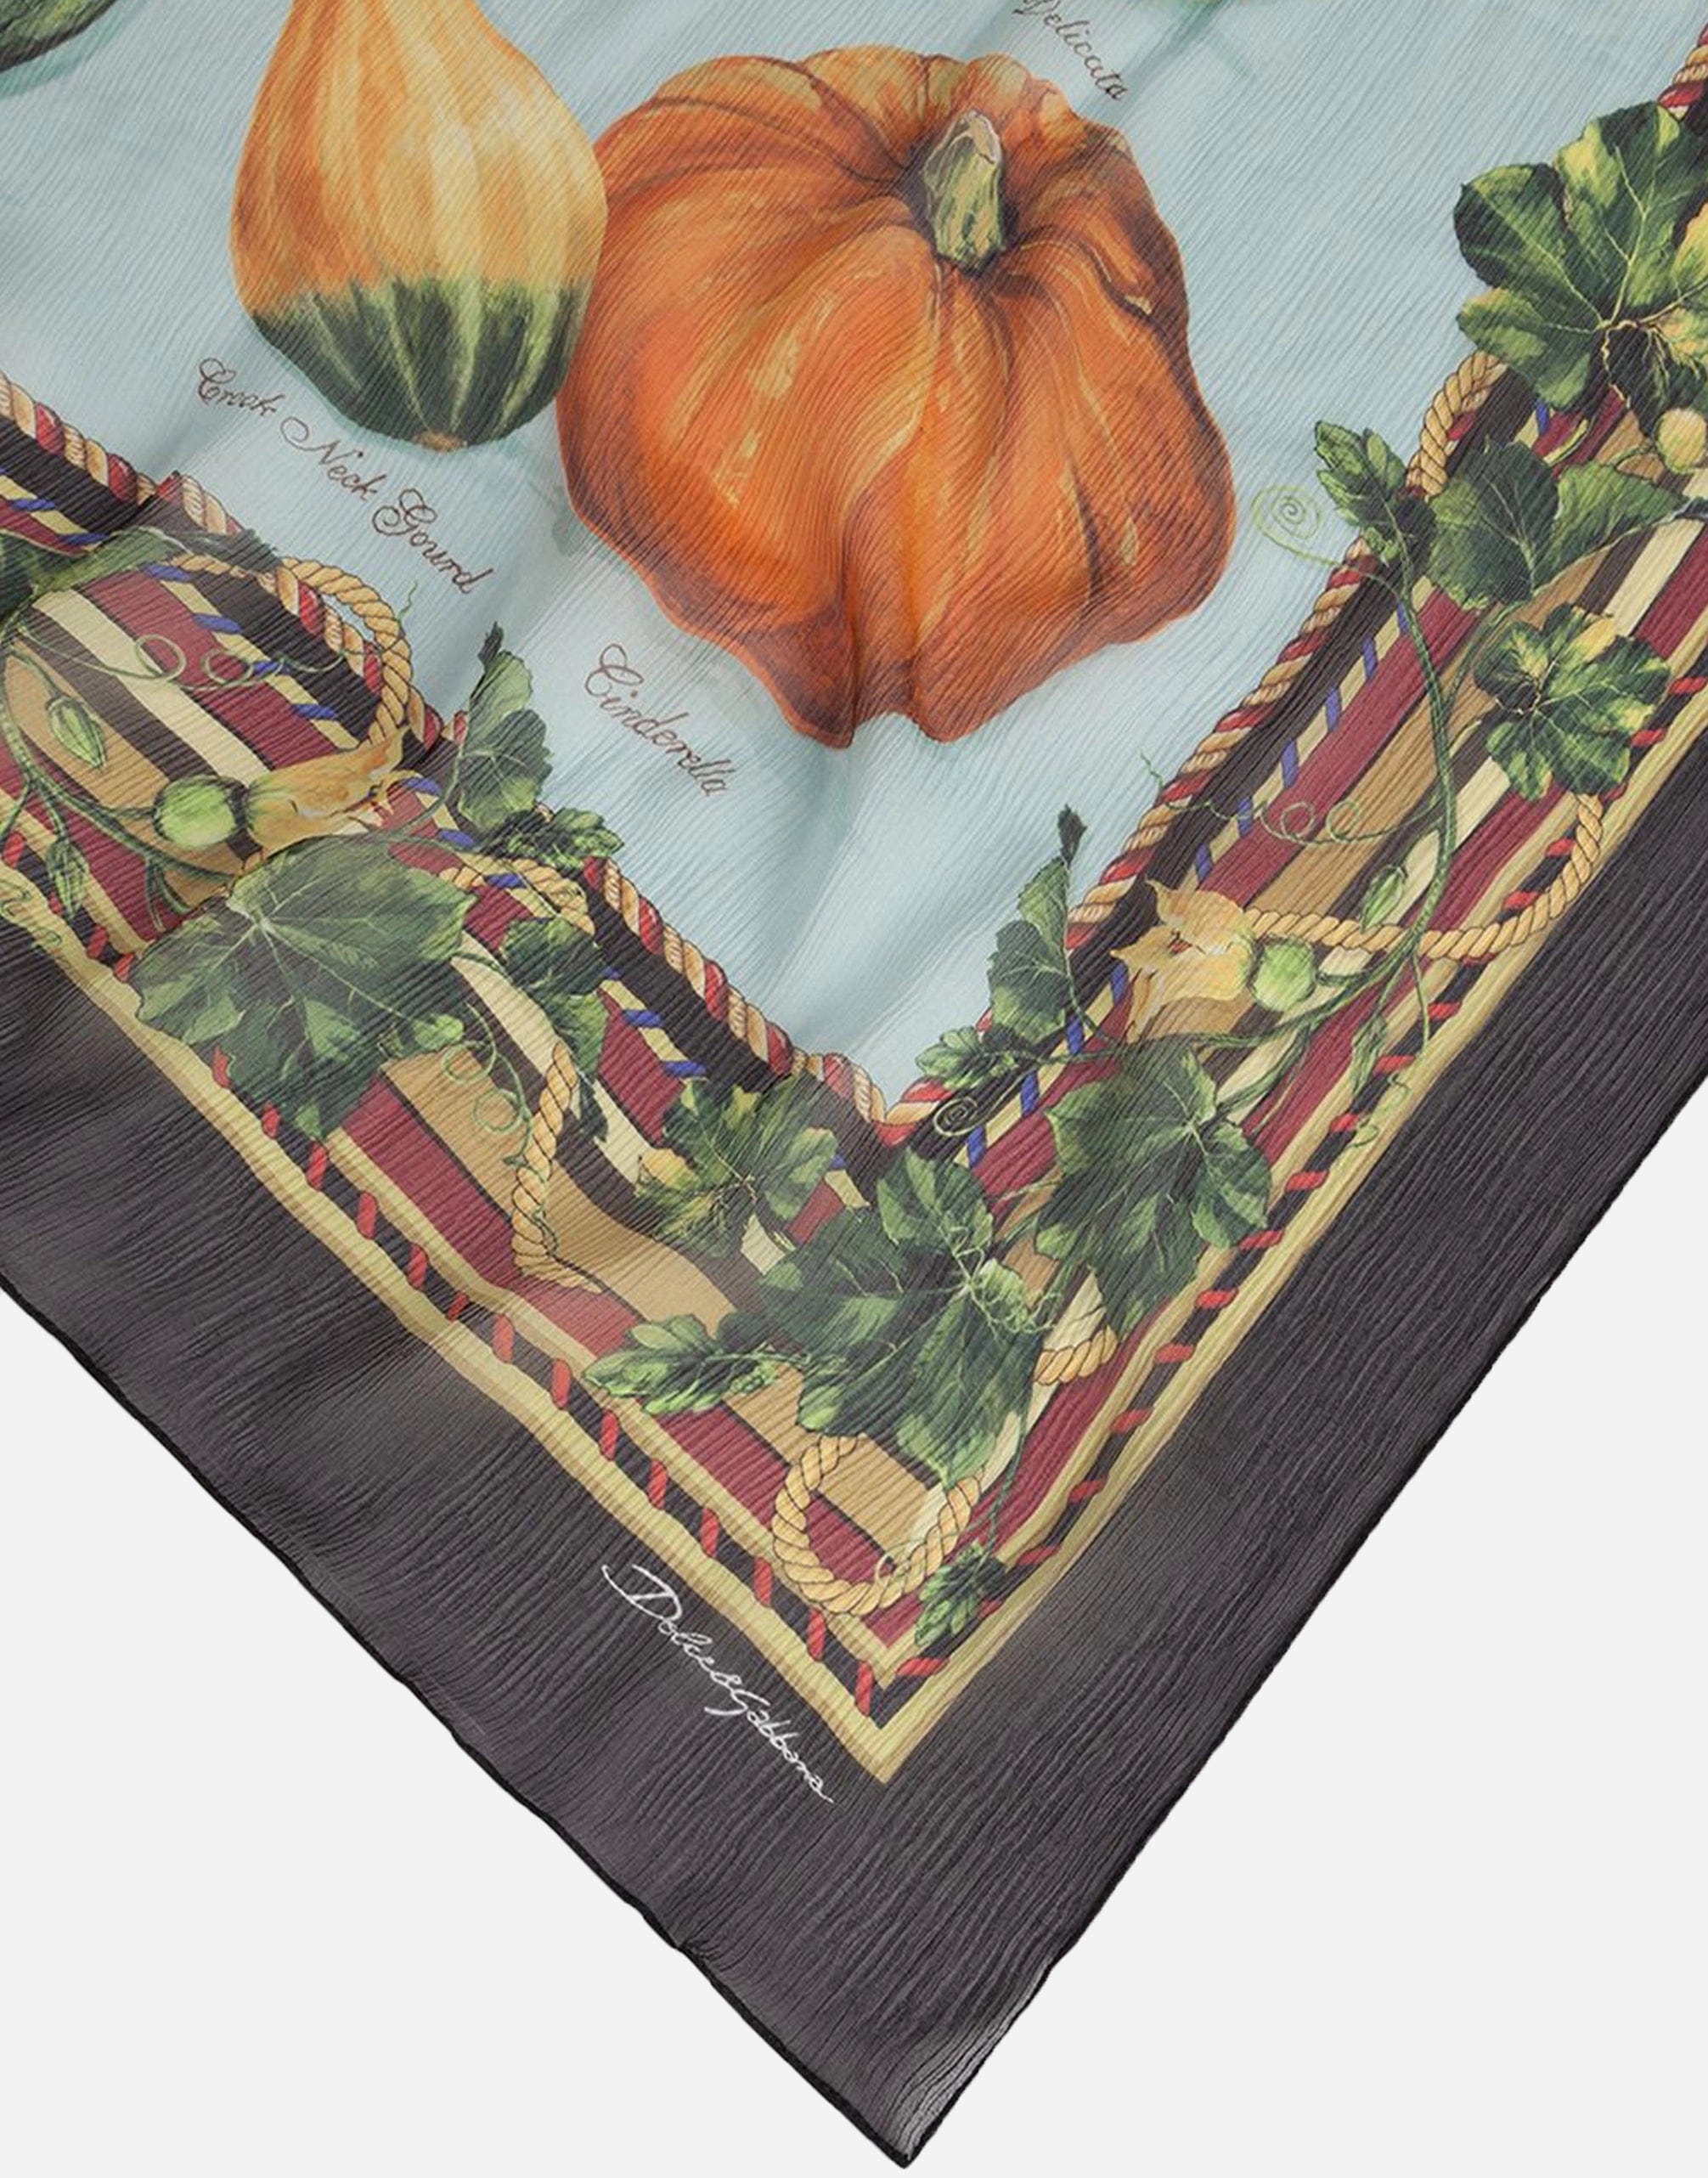 Dolce & Gabbana pumpkin print scarf